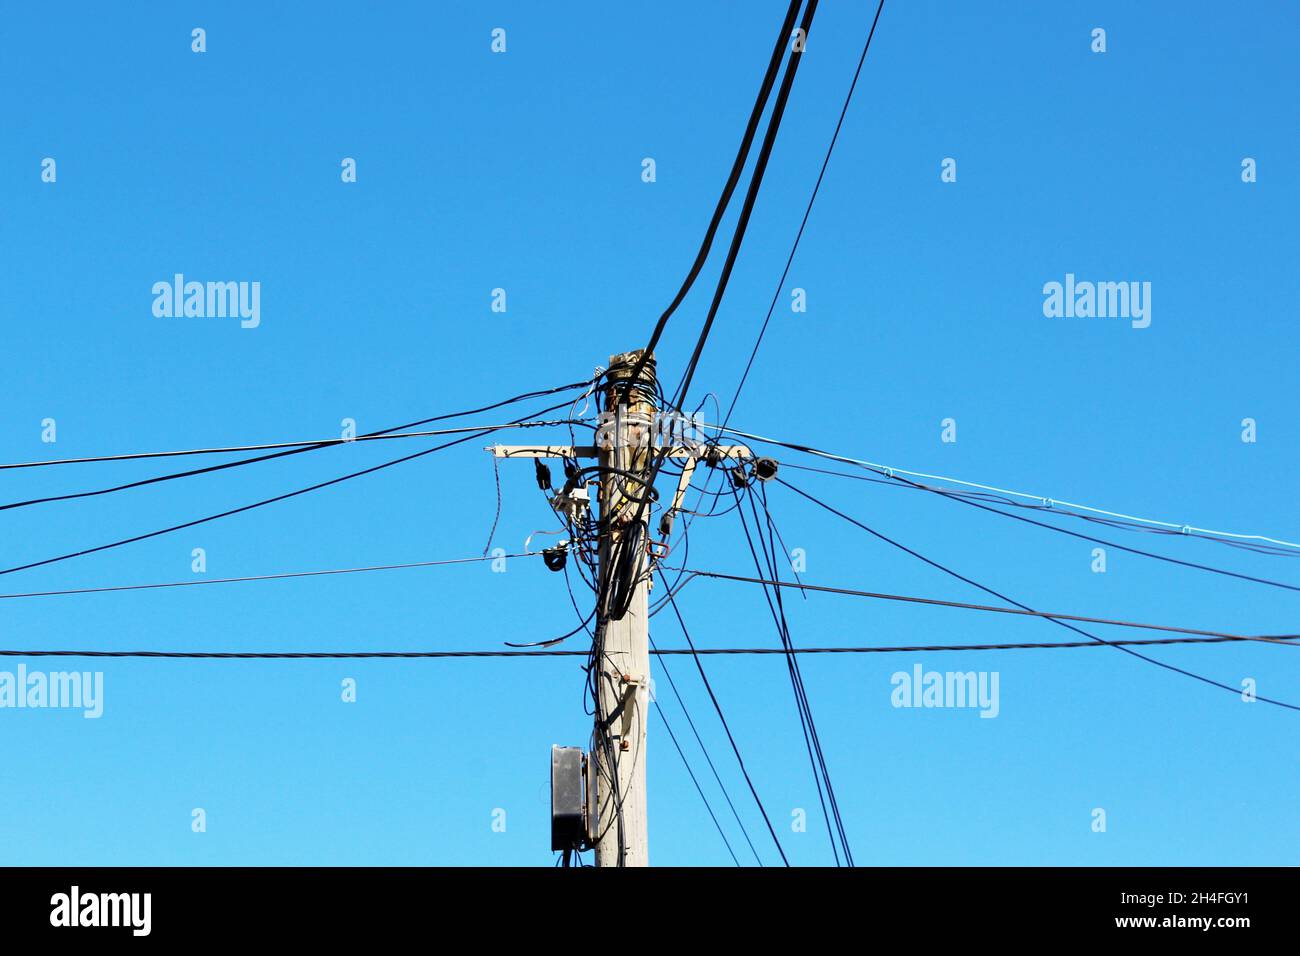 Strommasten mit vielen Stromleitungen, die um den Masten gewickelt sind, vor einem blauen, wolkenlosen Himmel in Espinho, Portugal. Stock Photo